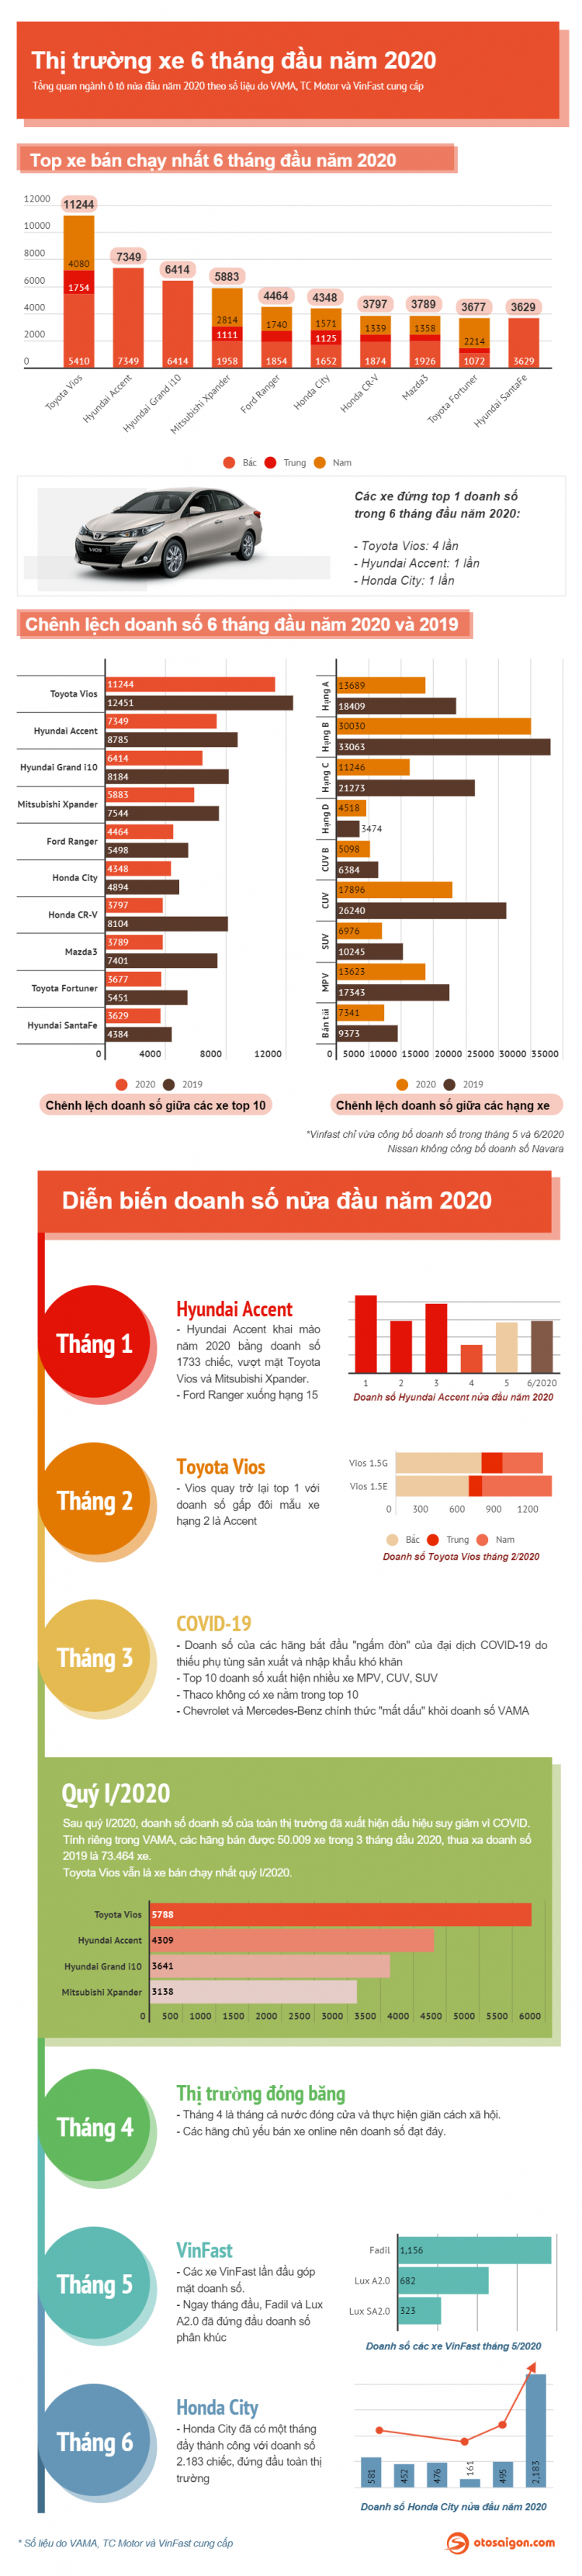 [Infographic] Nhìn lại thị trường xe Việt 6 tháng đầu năm 2020: đầy biến cố và bất ngờ